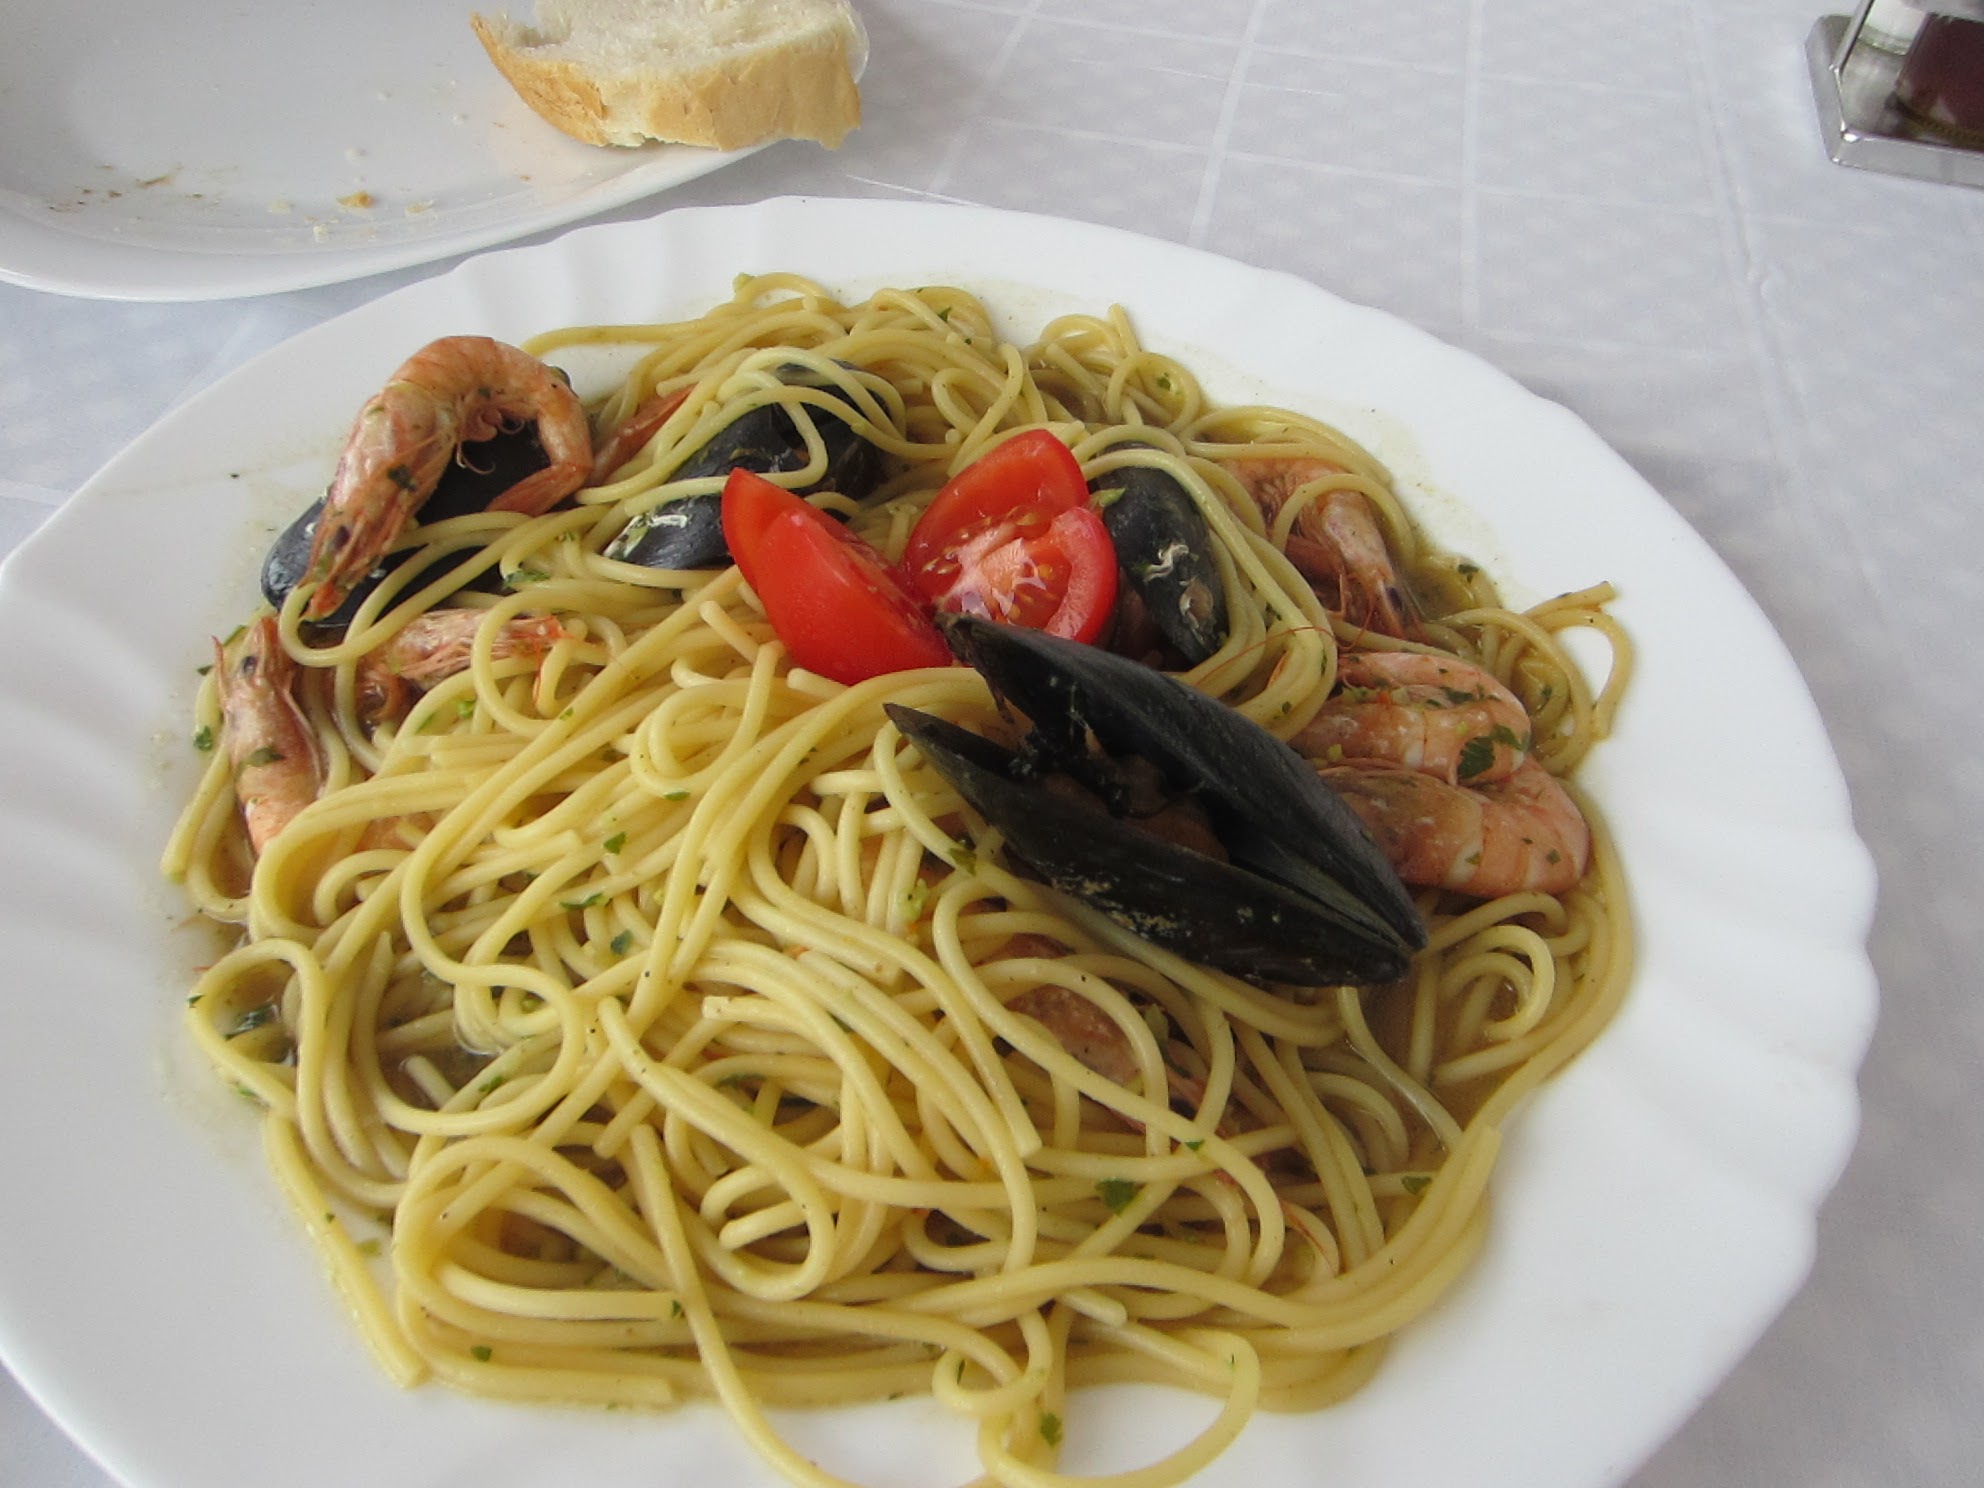 Seafood spaghetti in Milna.